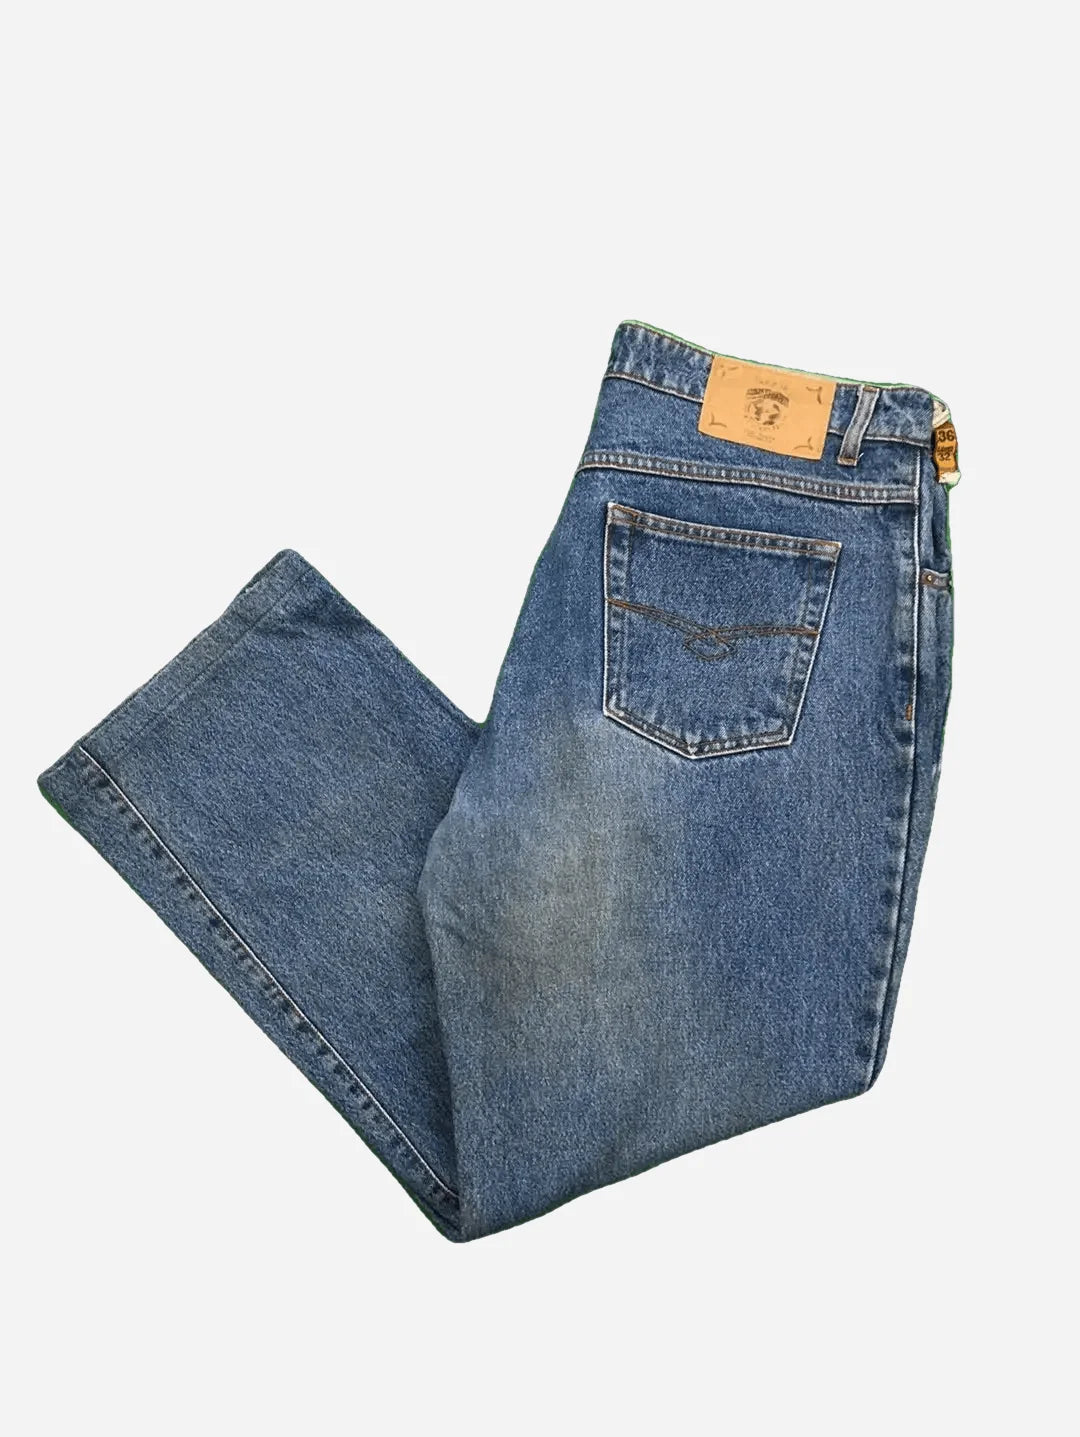 Southern Jim Jeans 35/32 (M)